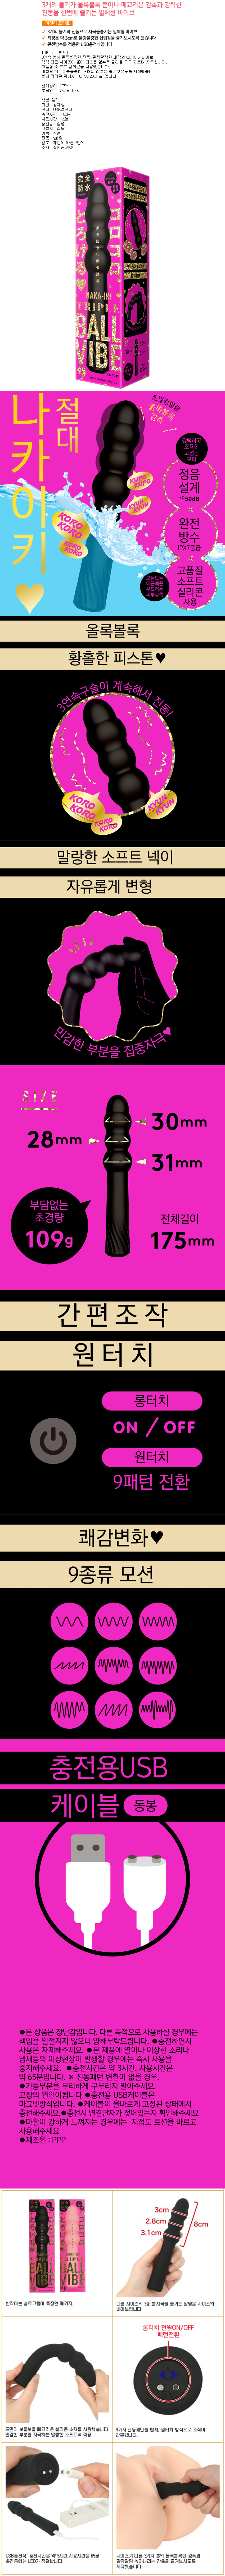 완전방수 정음설계 나카이키 트리플 볼 바이브9 블랙 (일본정품)